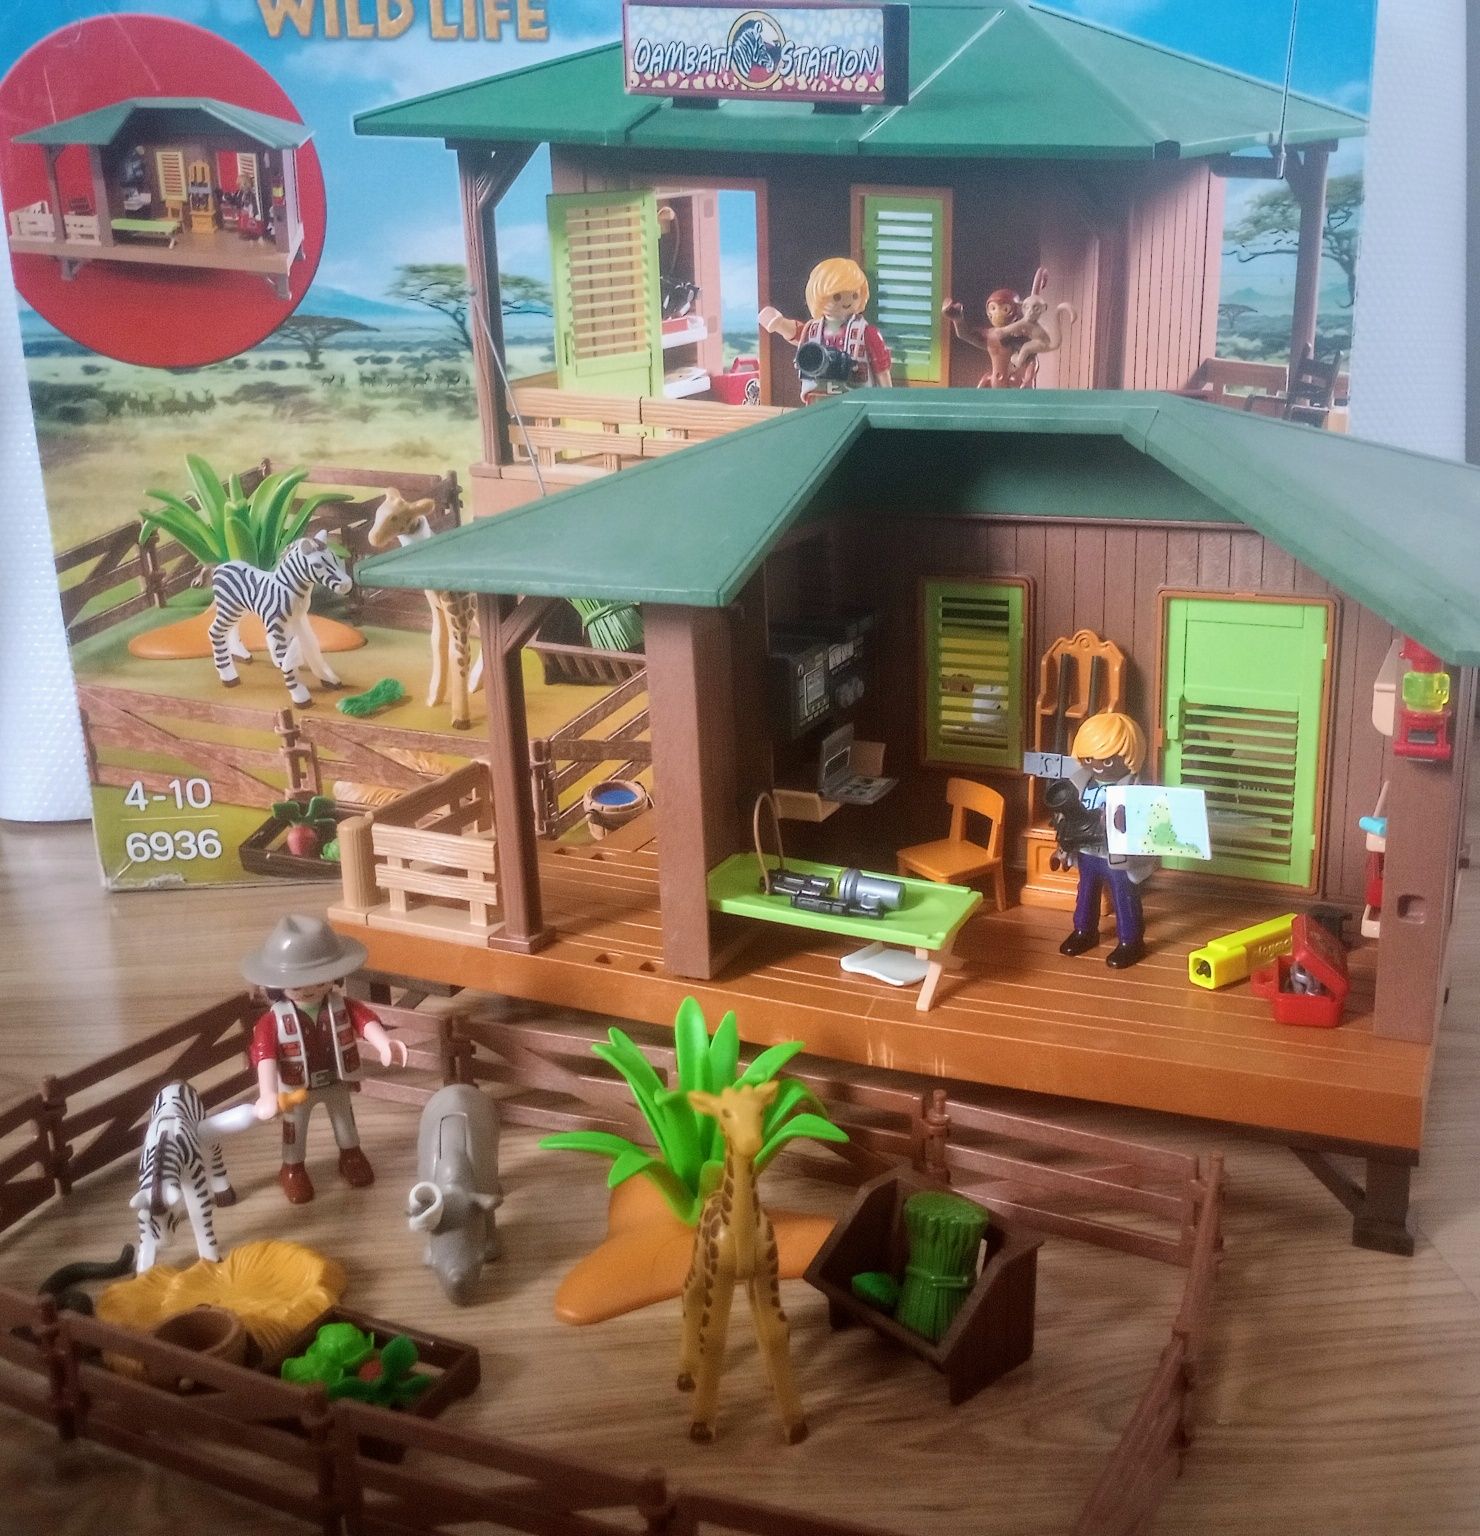 Playmobil domek ze zwierzątkami 6936